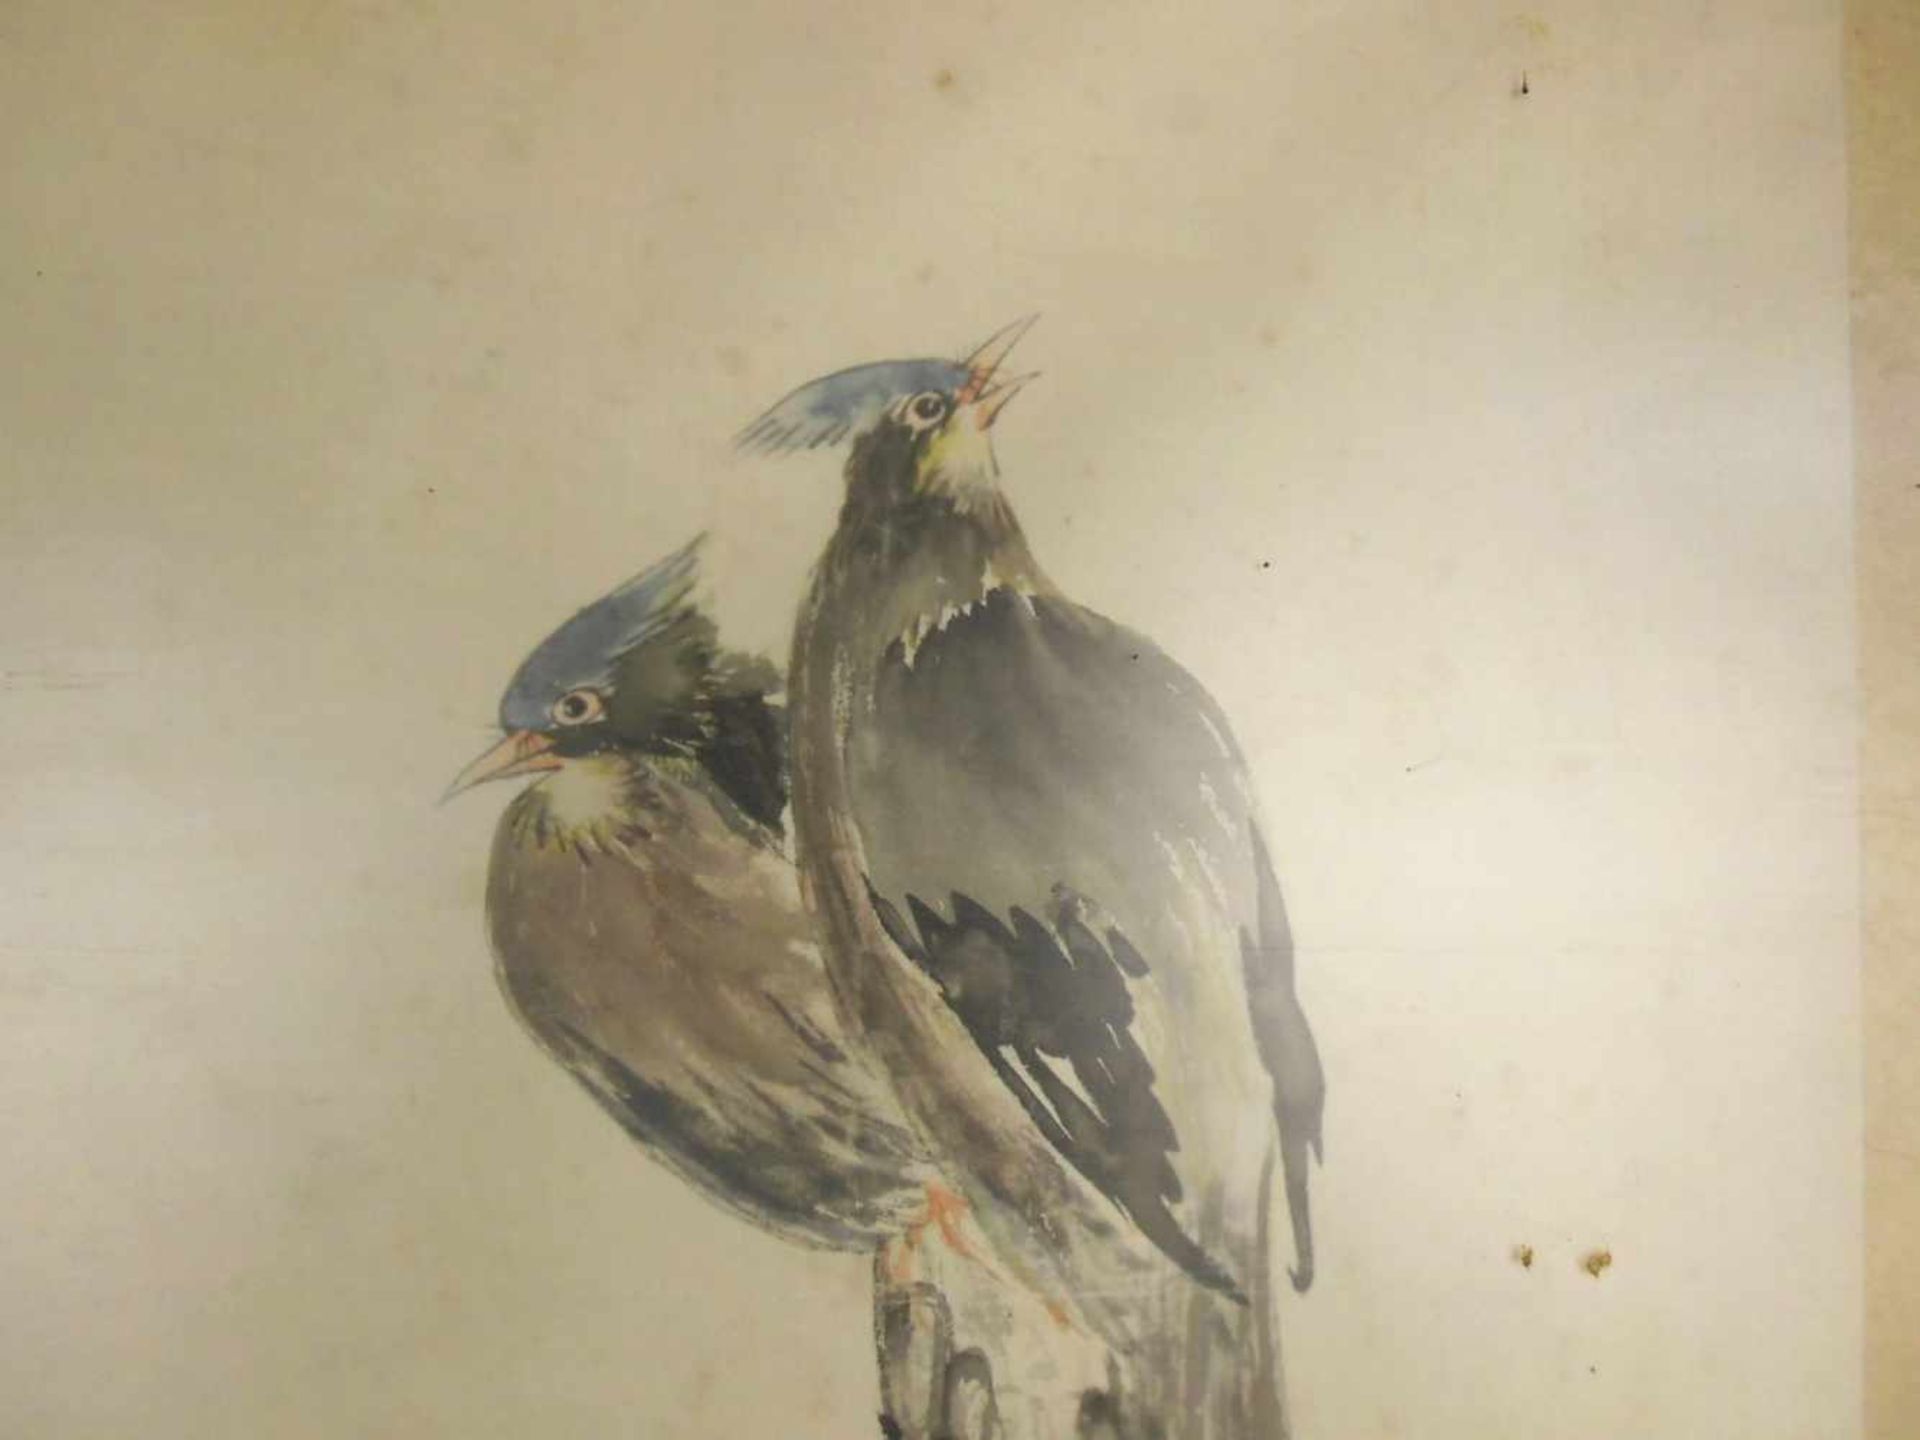 CHINESISCHES SEIDENBILD: "Haubenvögel auf einer Kiefer sitzend", Tusche und Aquarell in - Bild 3 aus 5